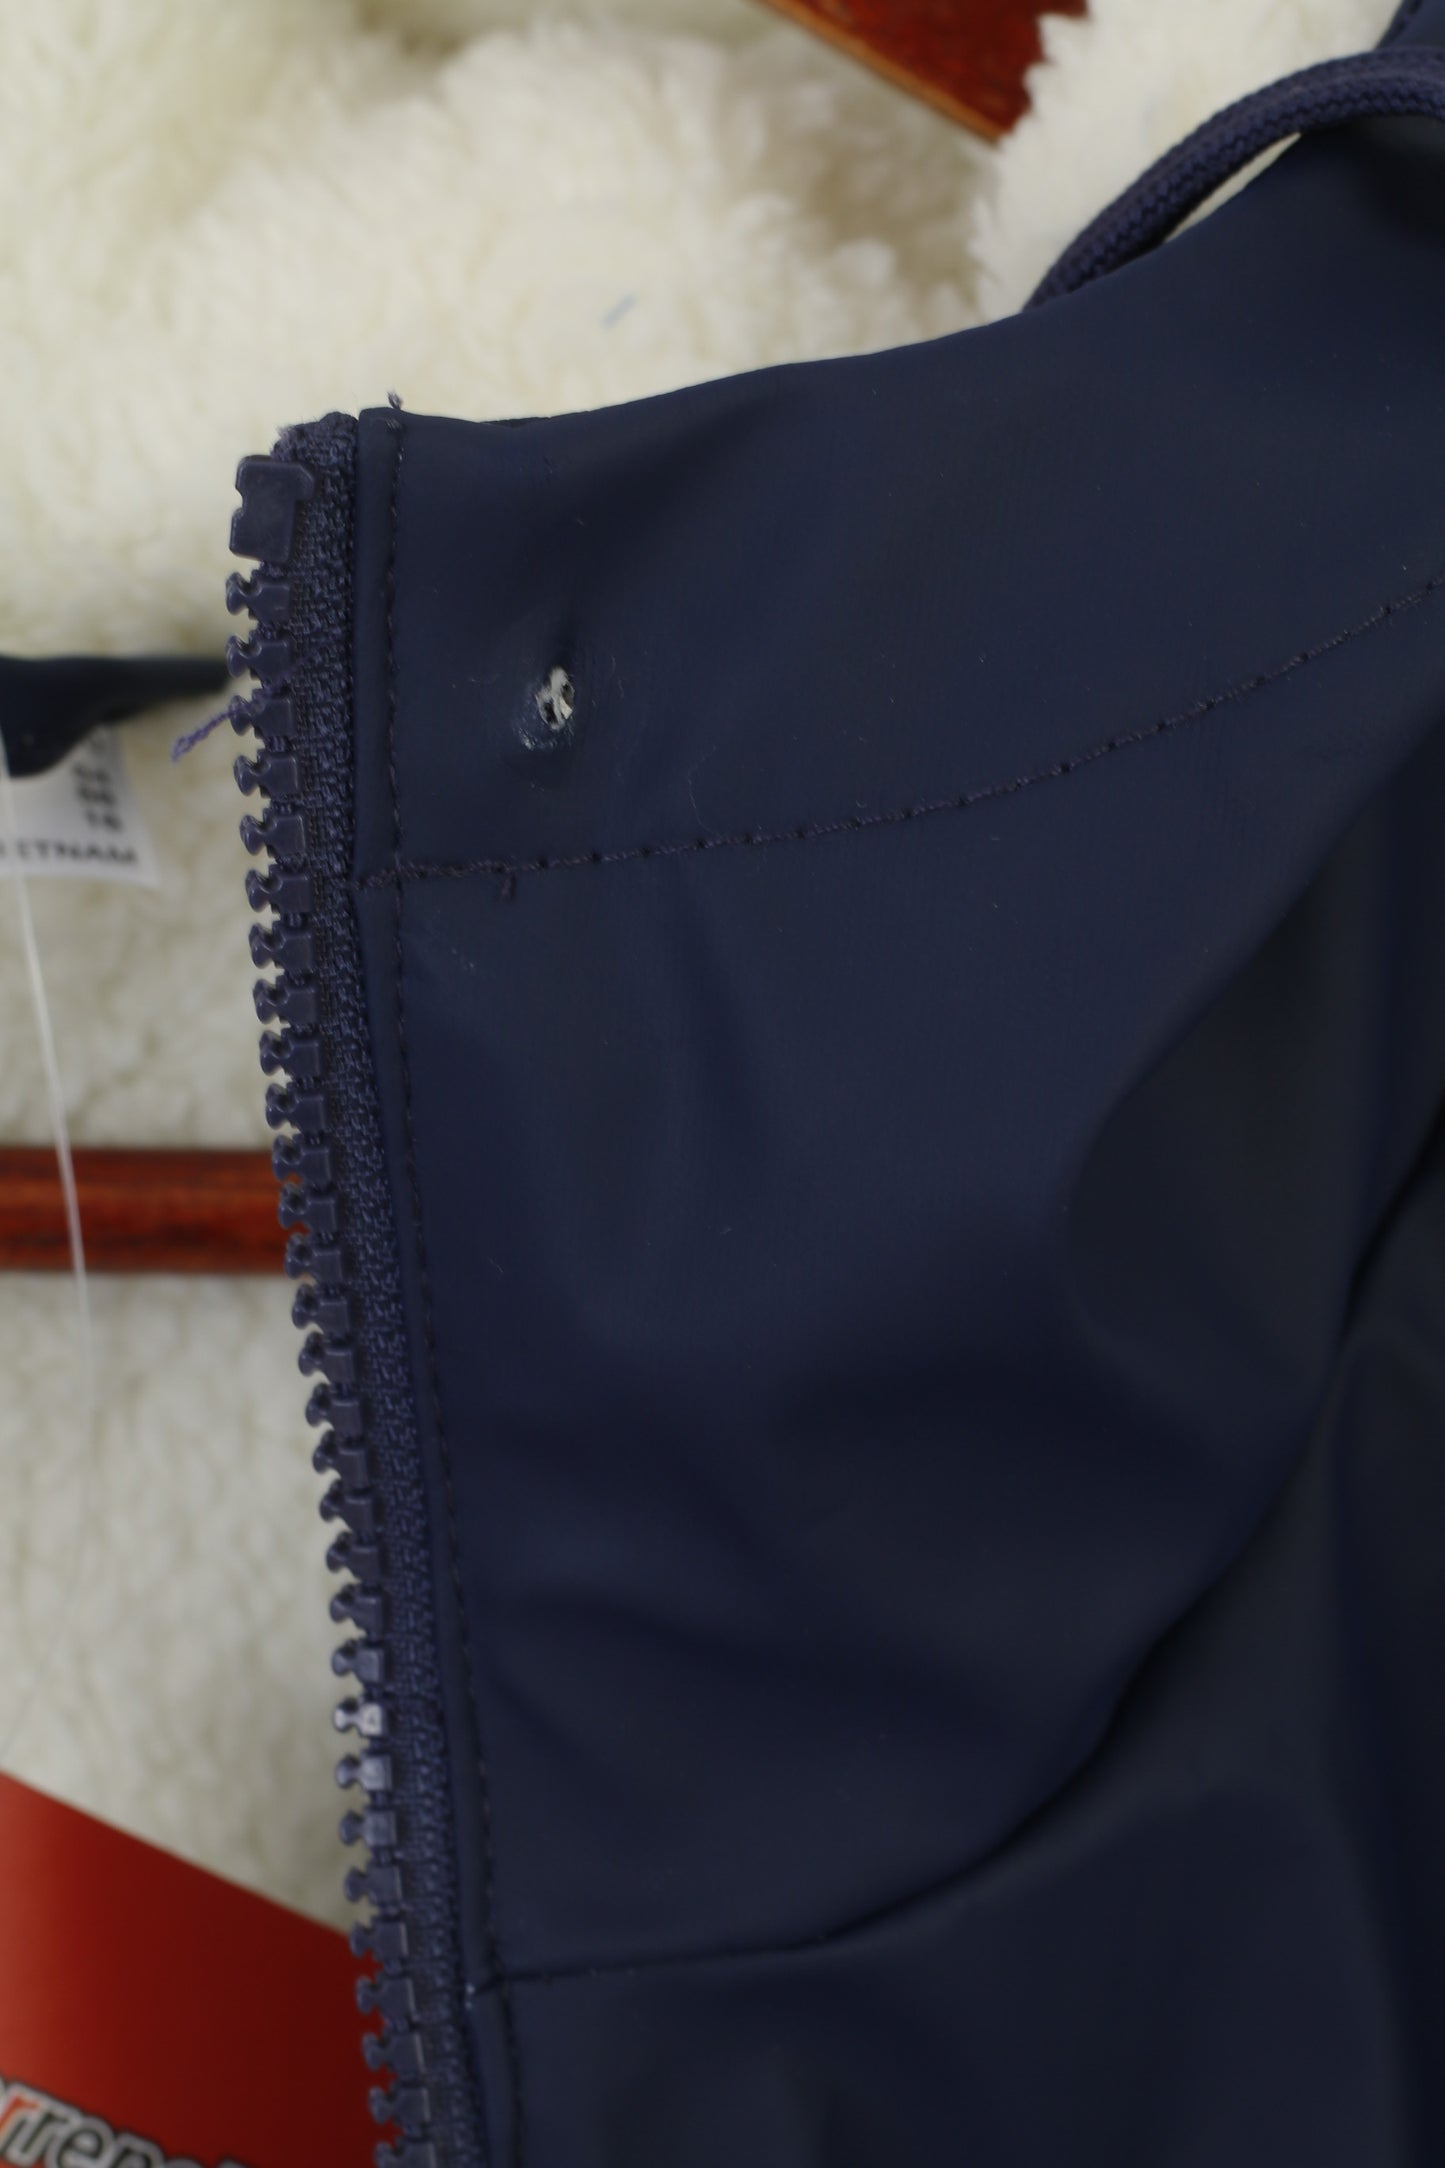 Nouveau Wattrepellent femmes 22 48 XL veste marine extérieur à capuche doublé pull à capuche